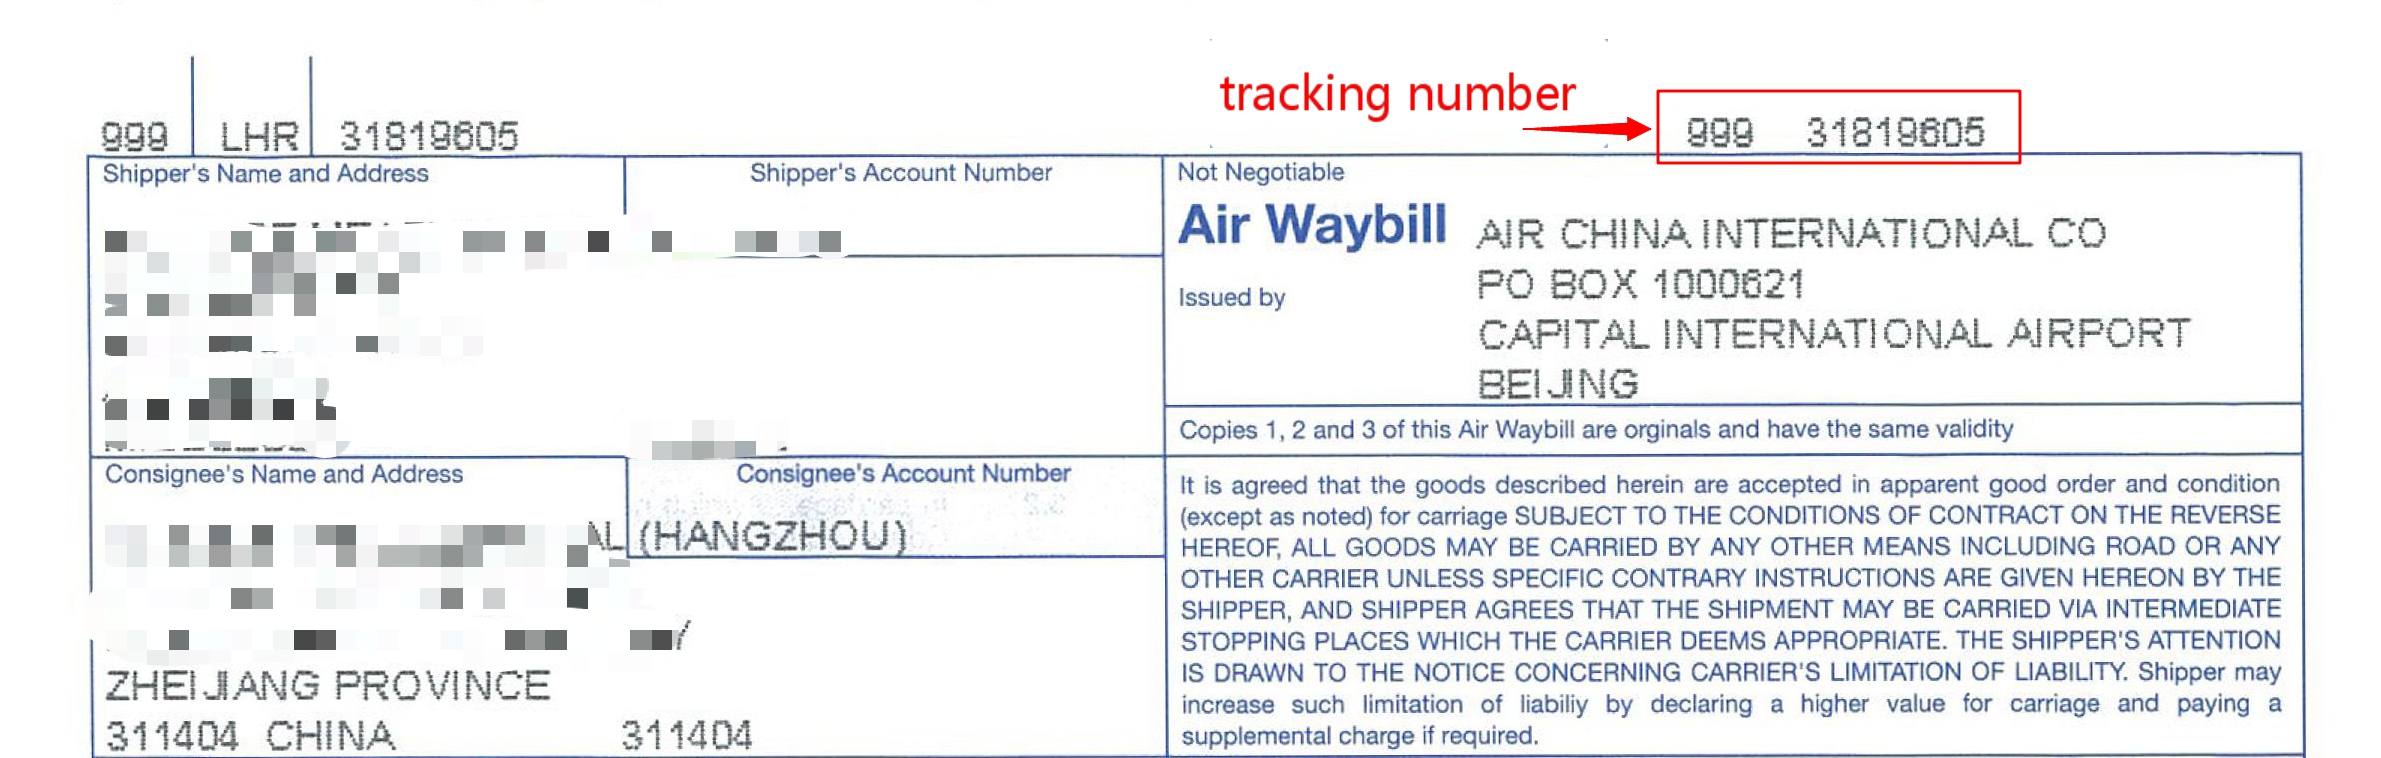 airway bill